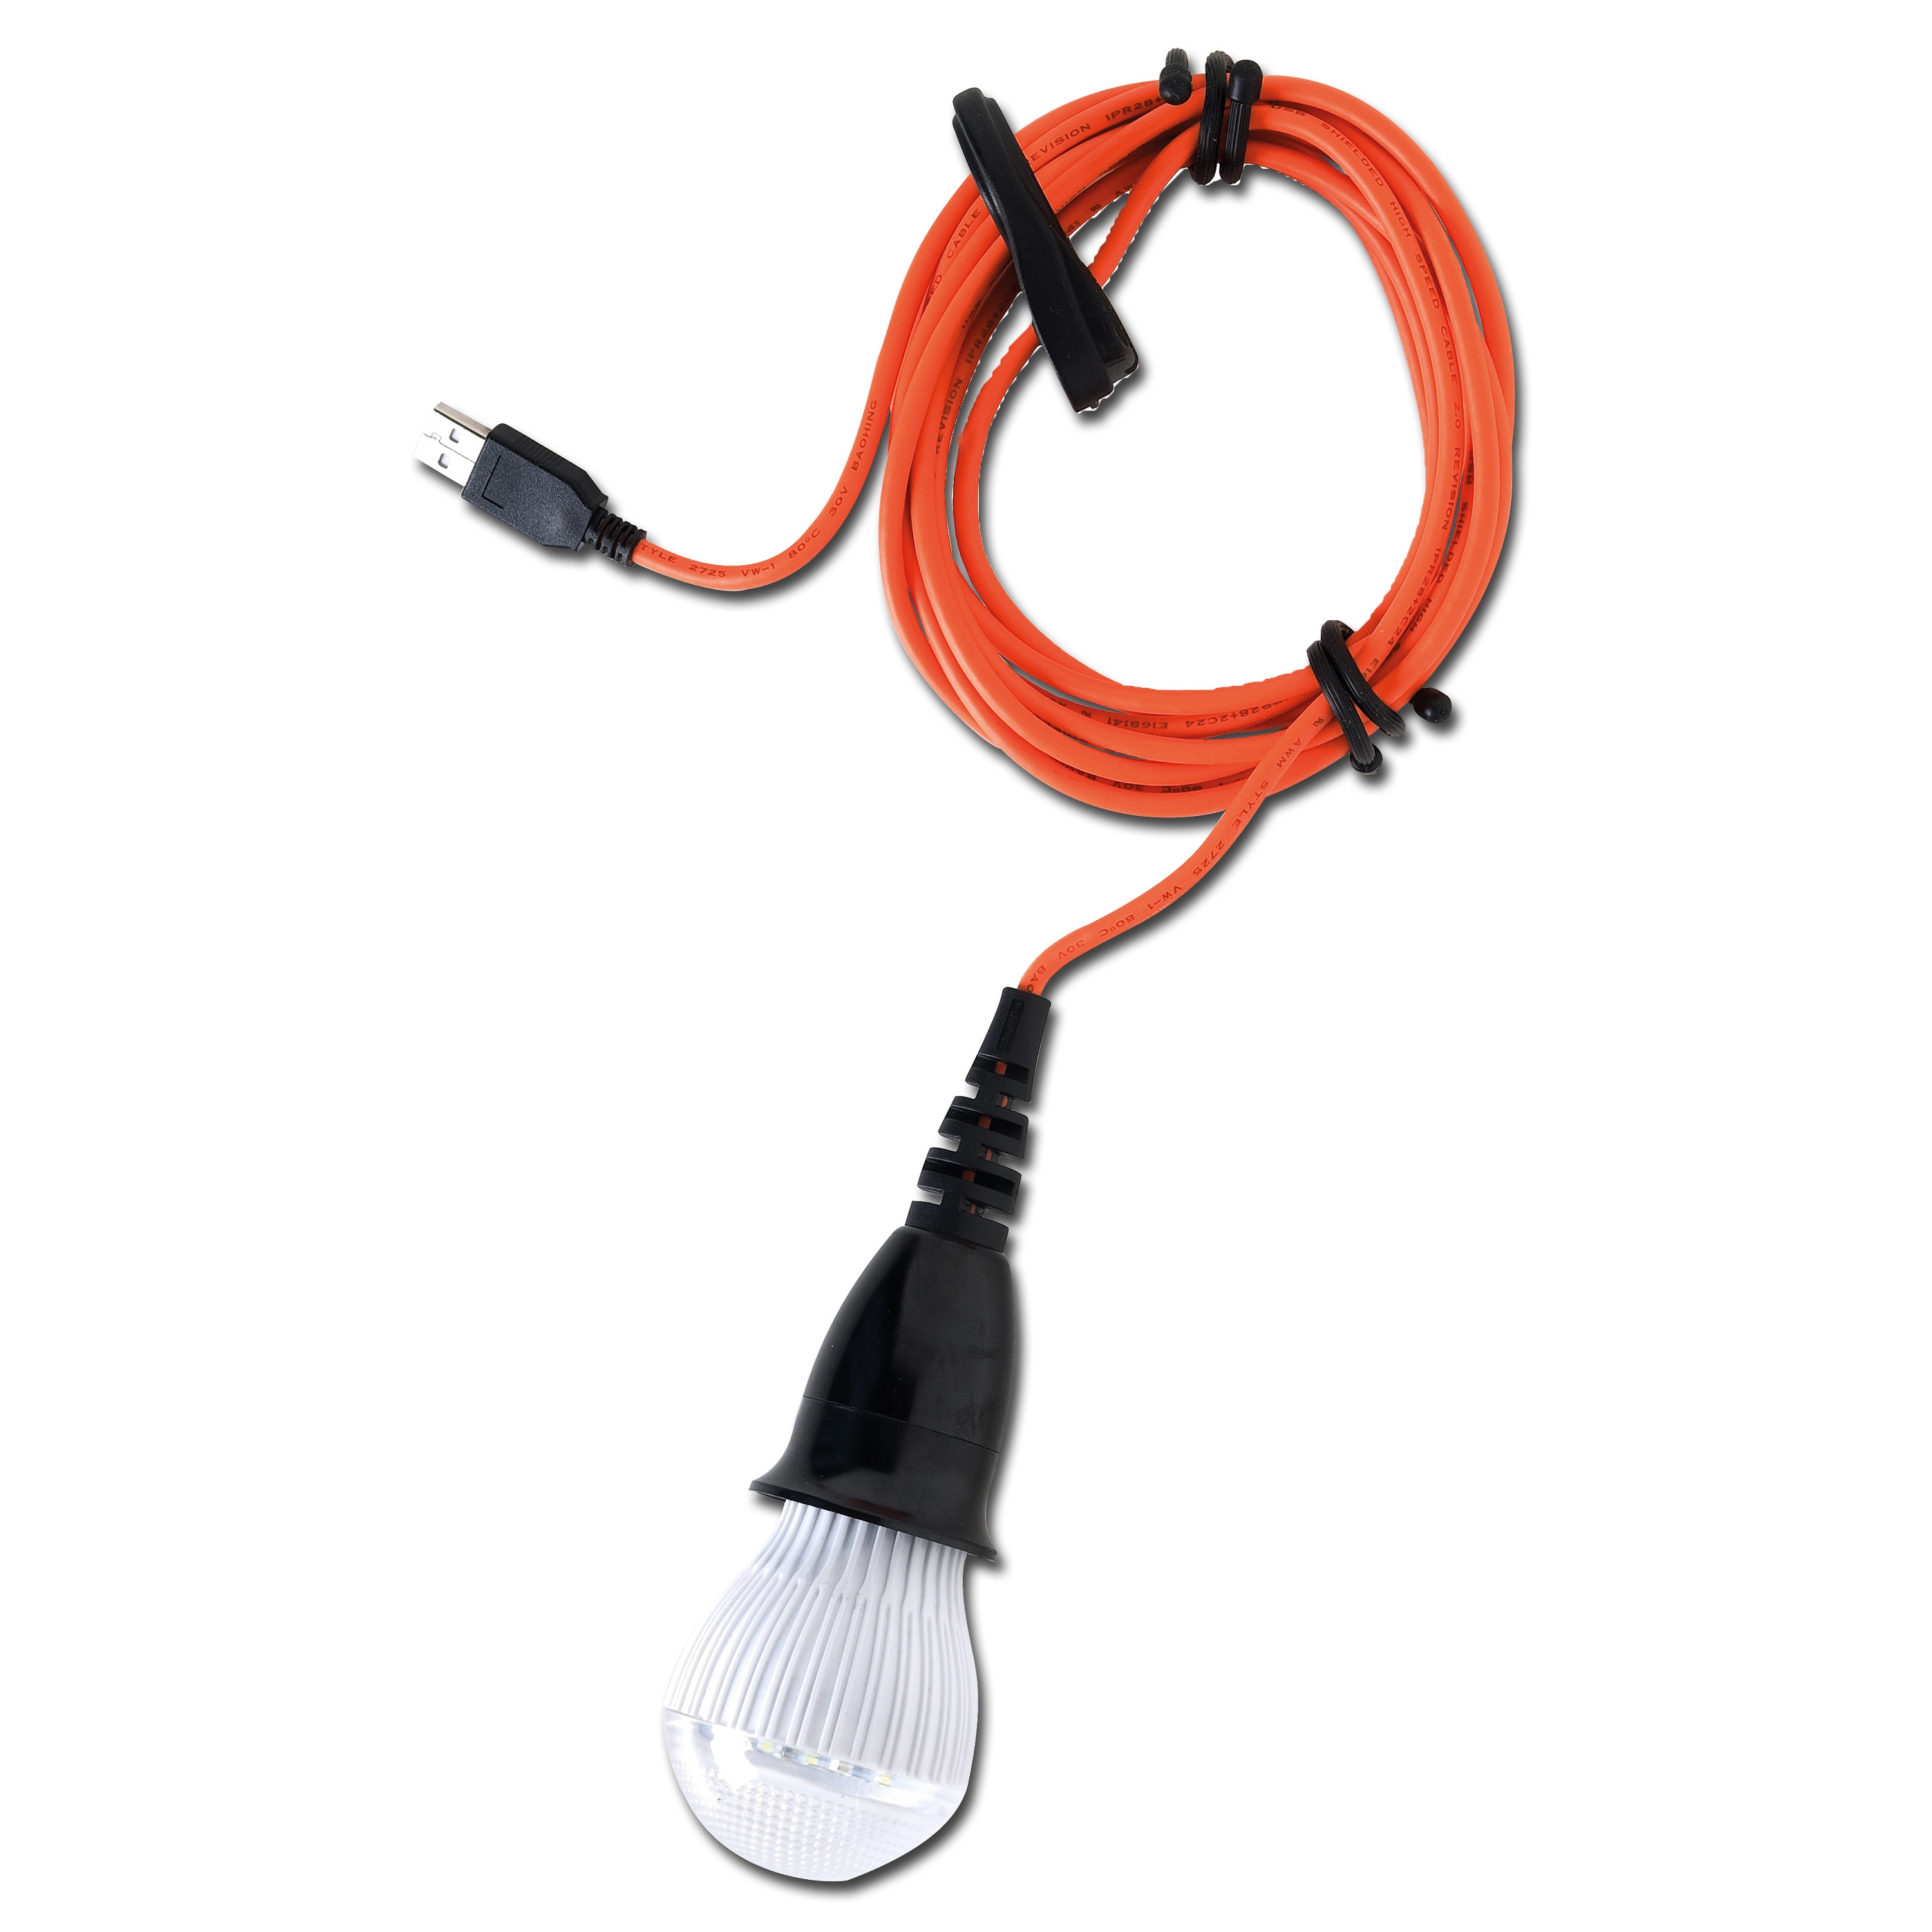 LED Lampe Solio ALVA mit USB-Anschluss kaufen bei ASMC